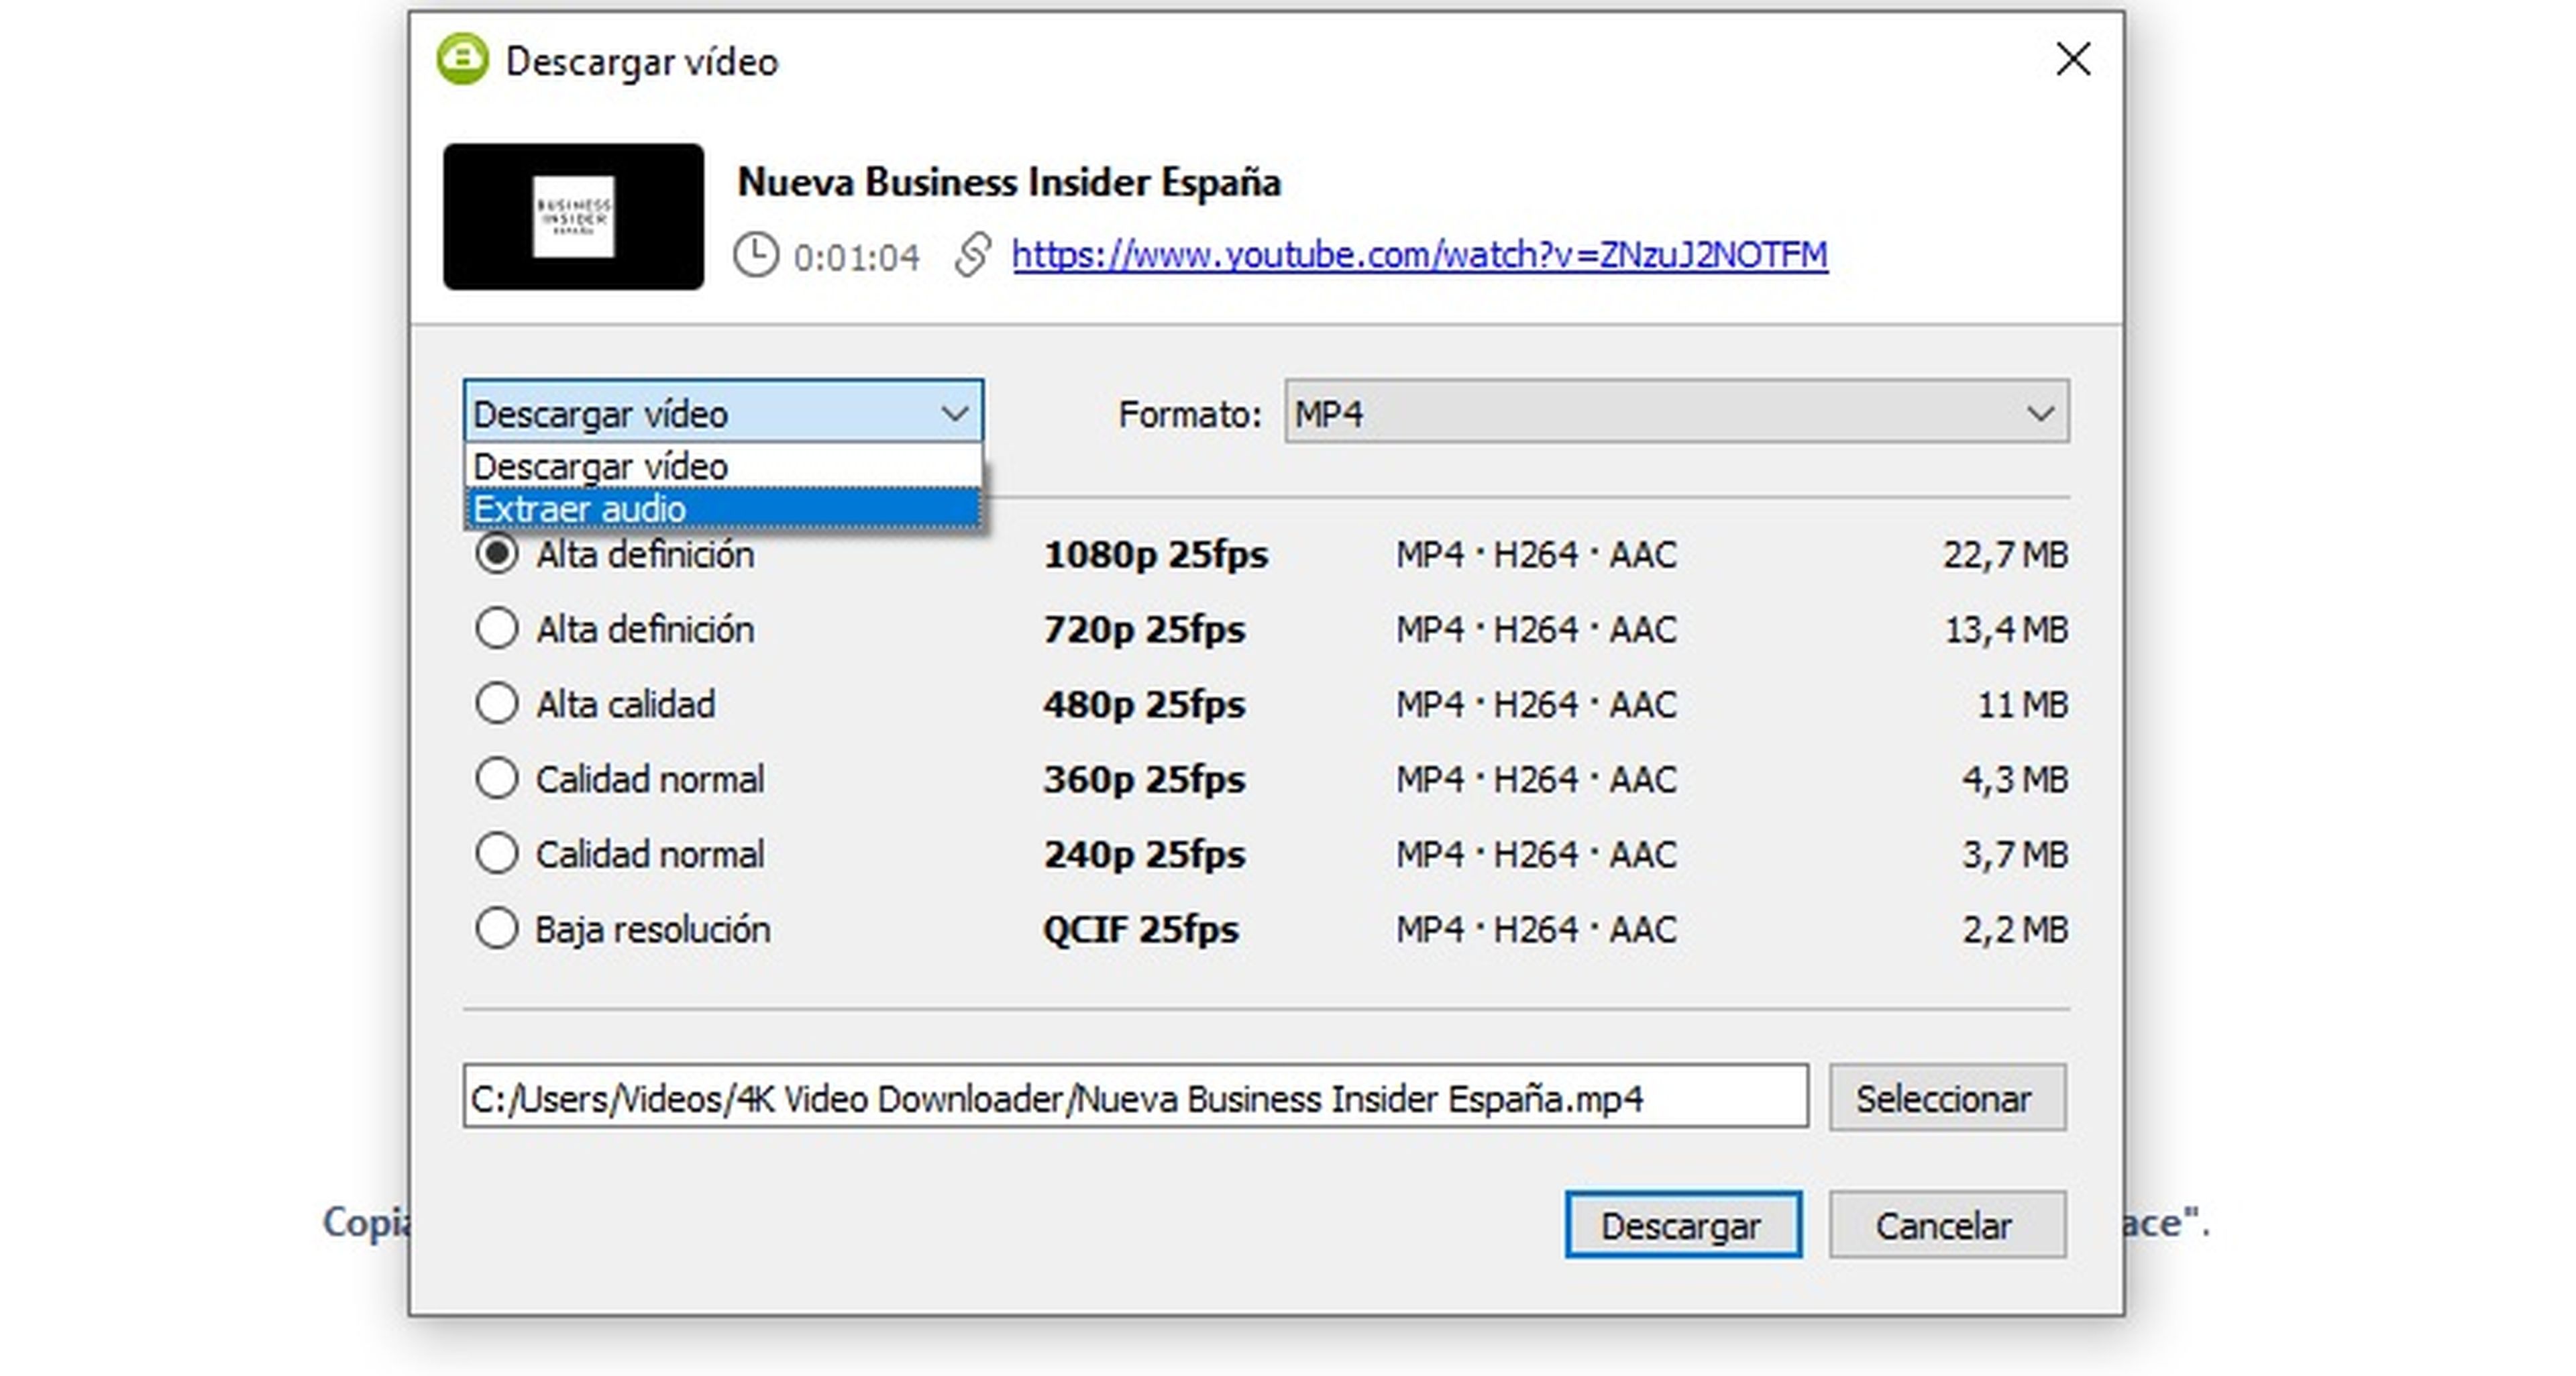 4K video Downloader